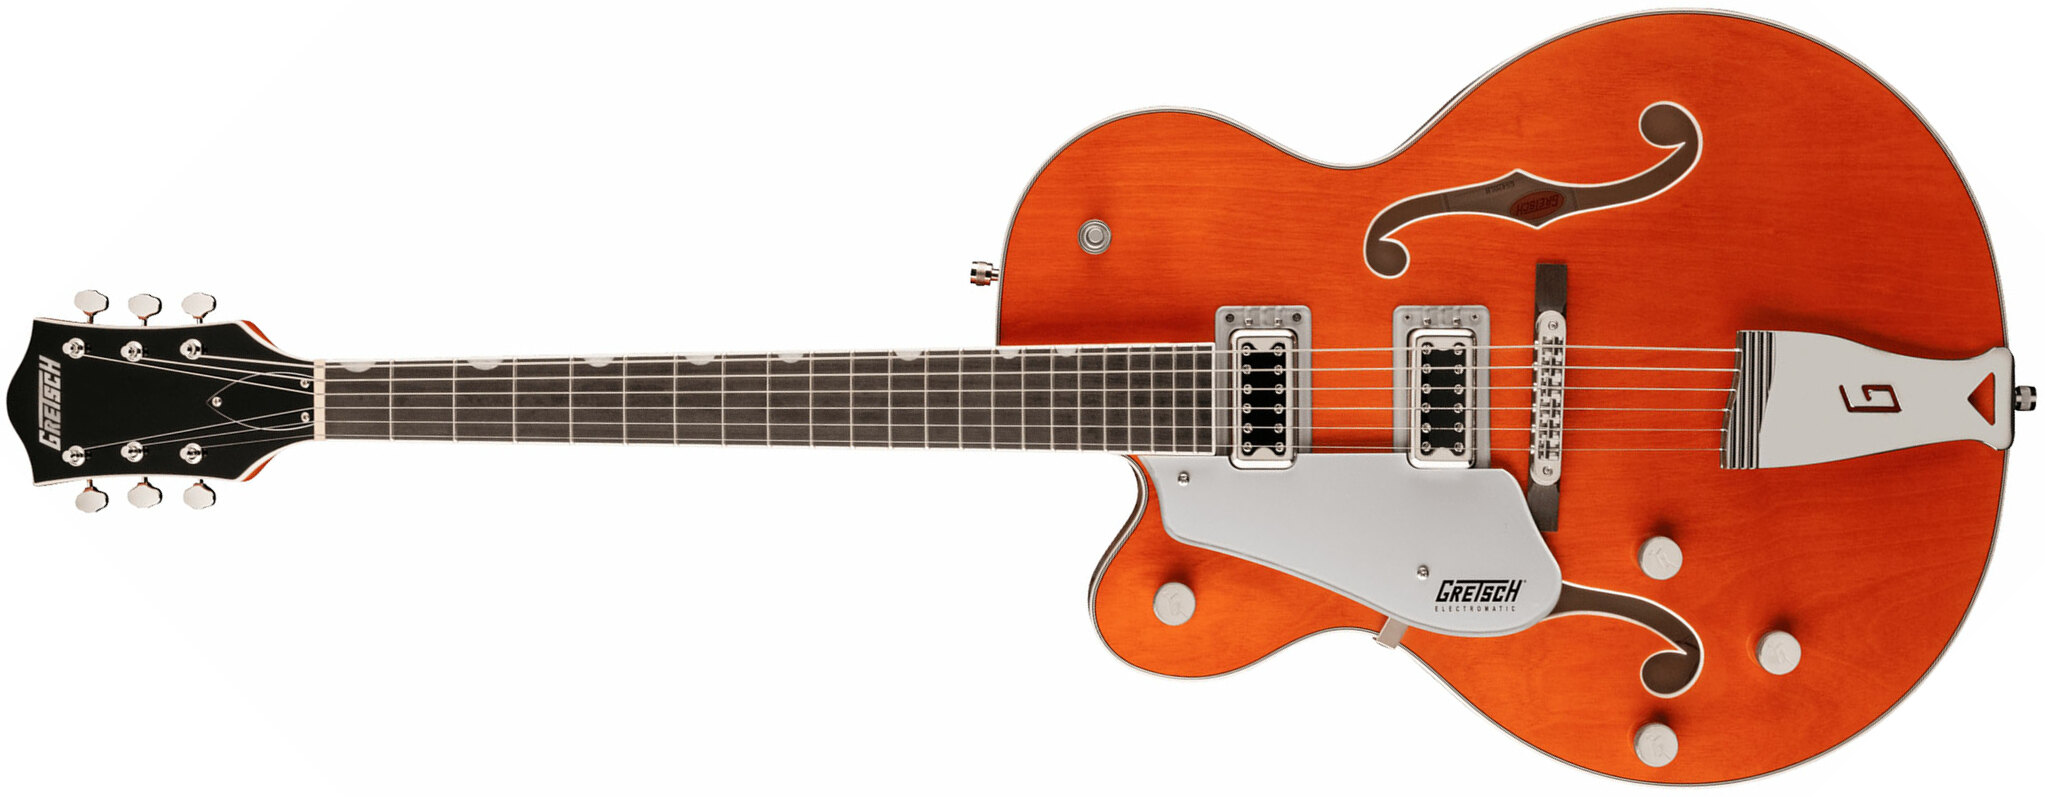 Gretsch G5420lh Classic Electromatic Hollow Body Gaucher Hh Ht Lau - Orange Stain - Linkshandige elektrische gitaar - Main picture